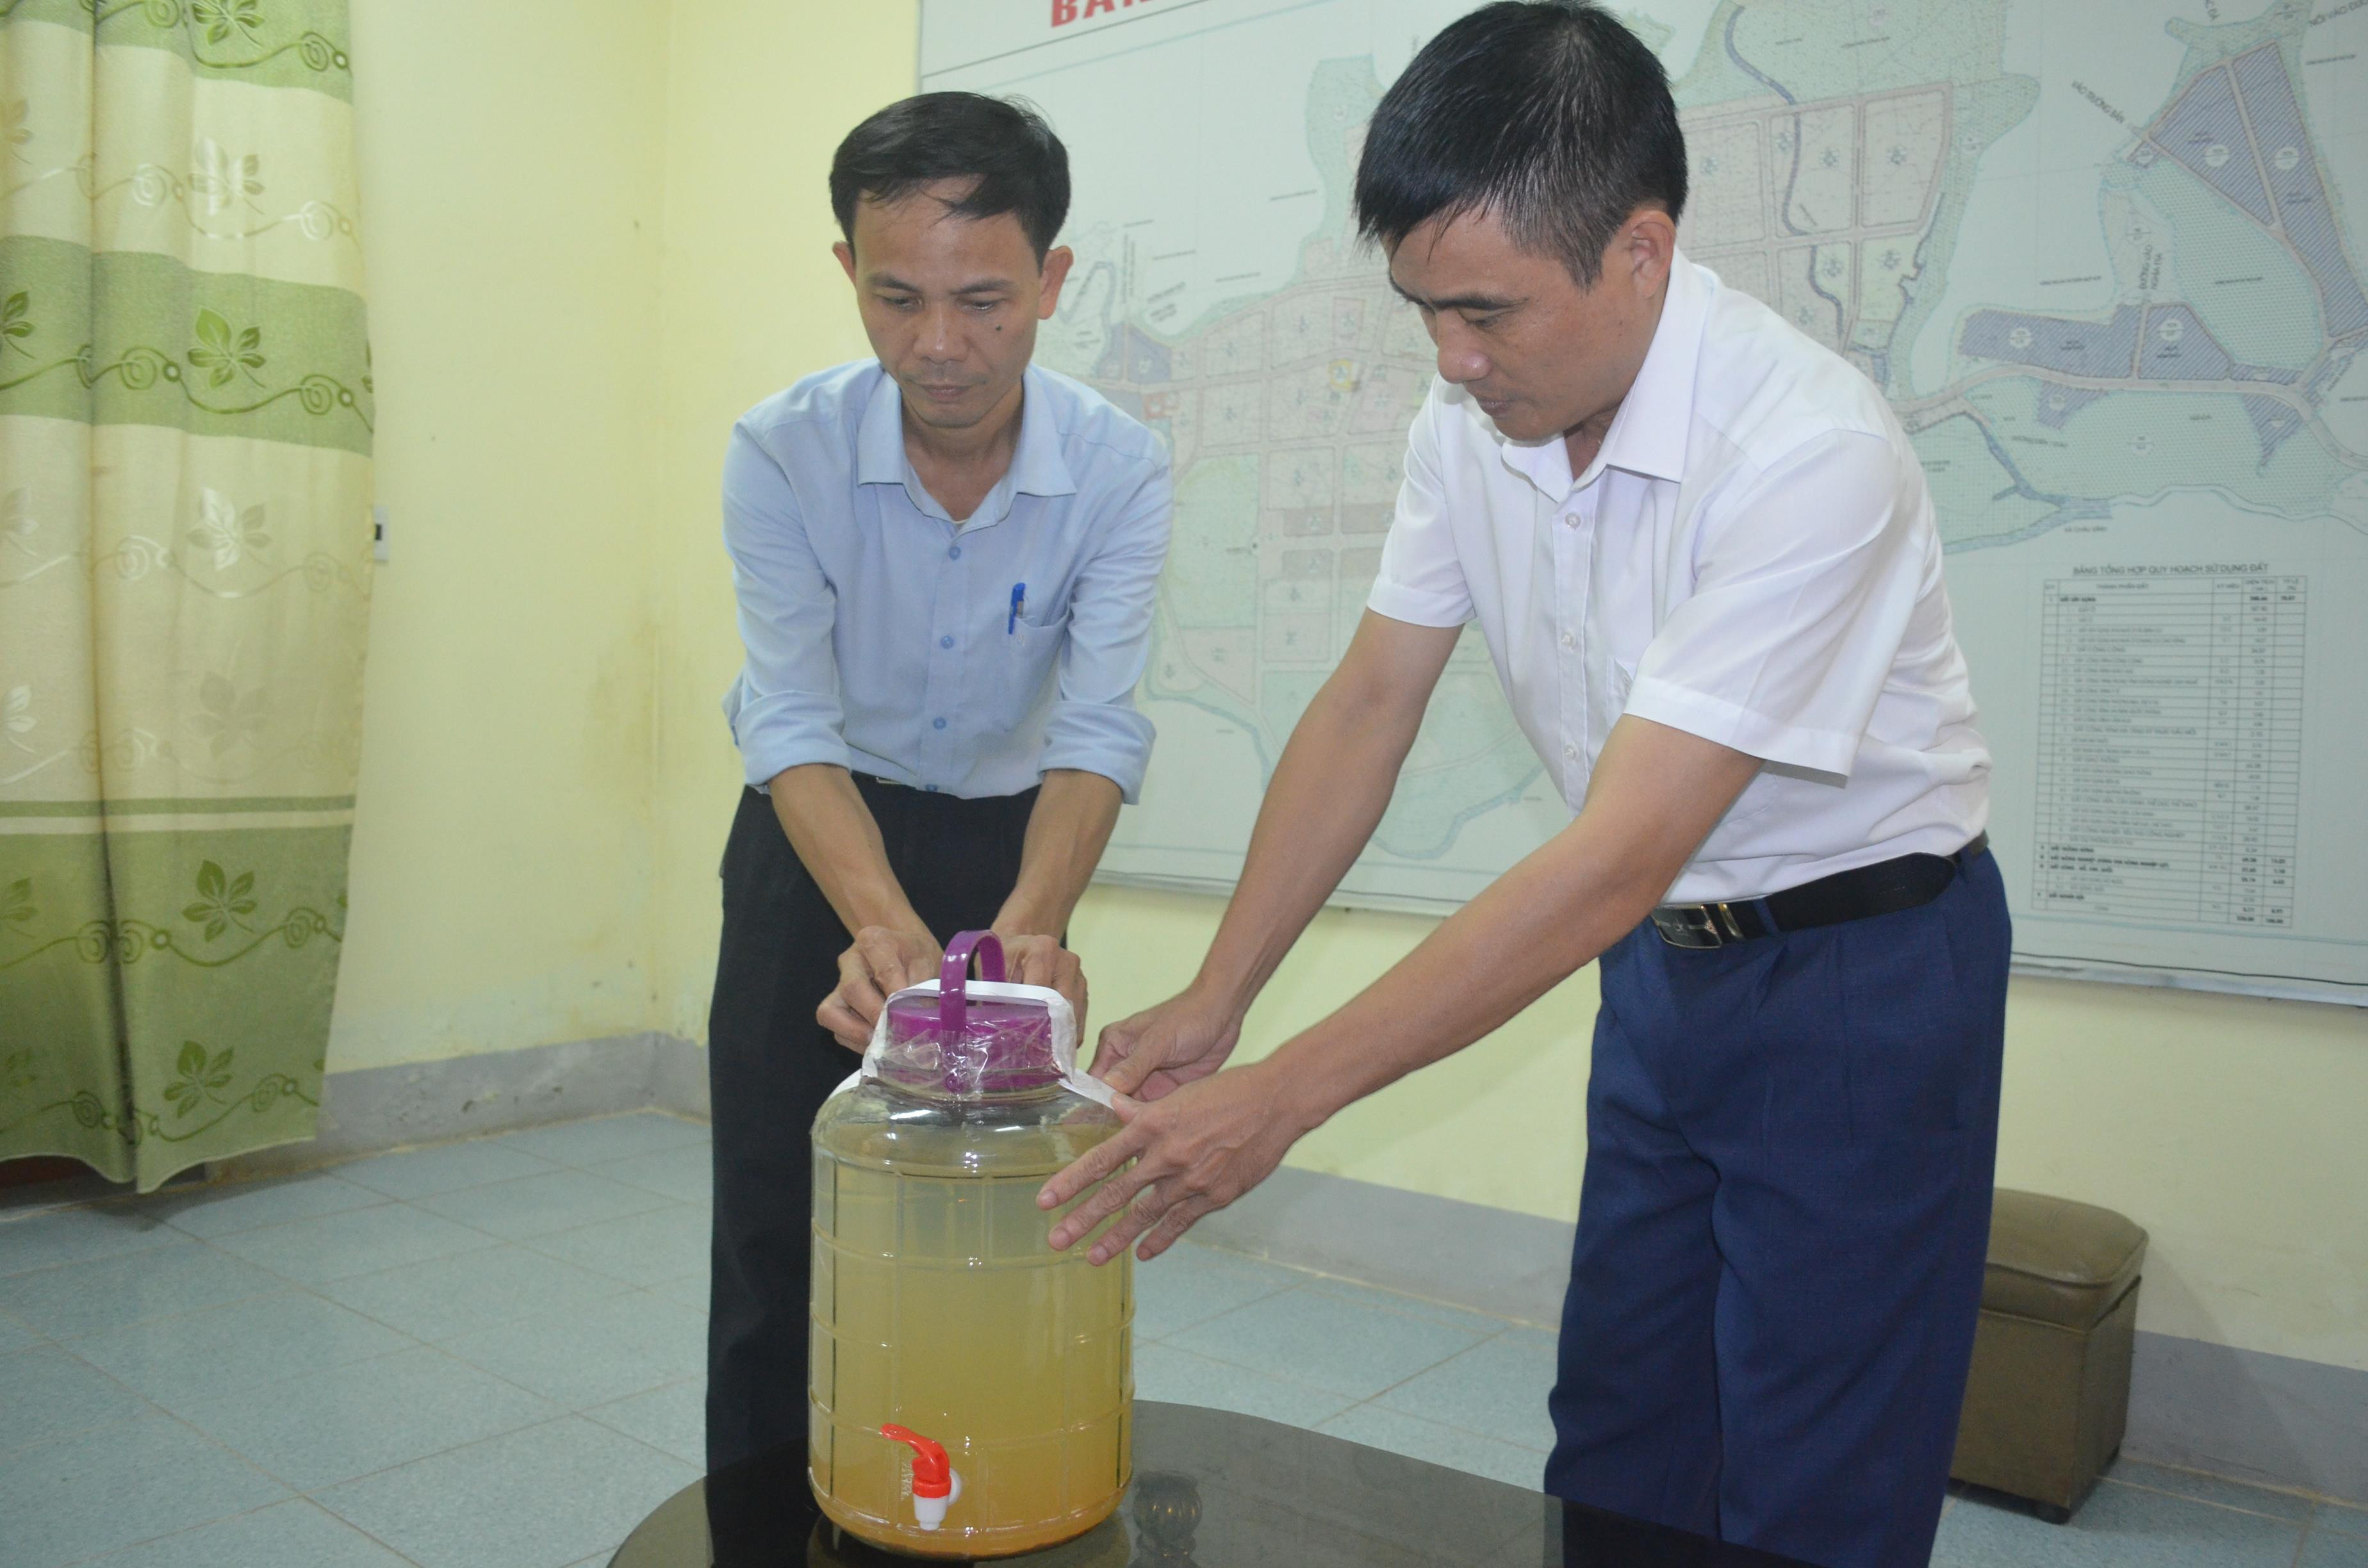 Cán bộ UBND thị trấn Quỳ Hợp niêm phong mẫu nước suối Nậm Huống để đưa đi kiểm nghiệm.